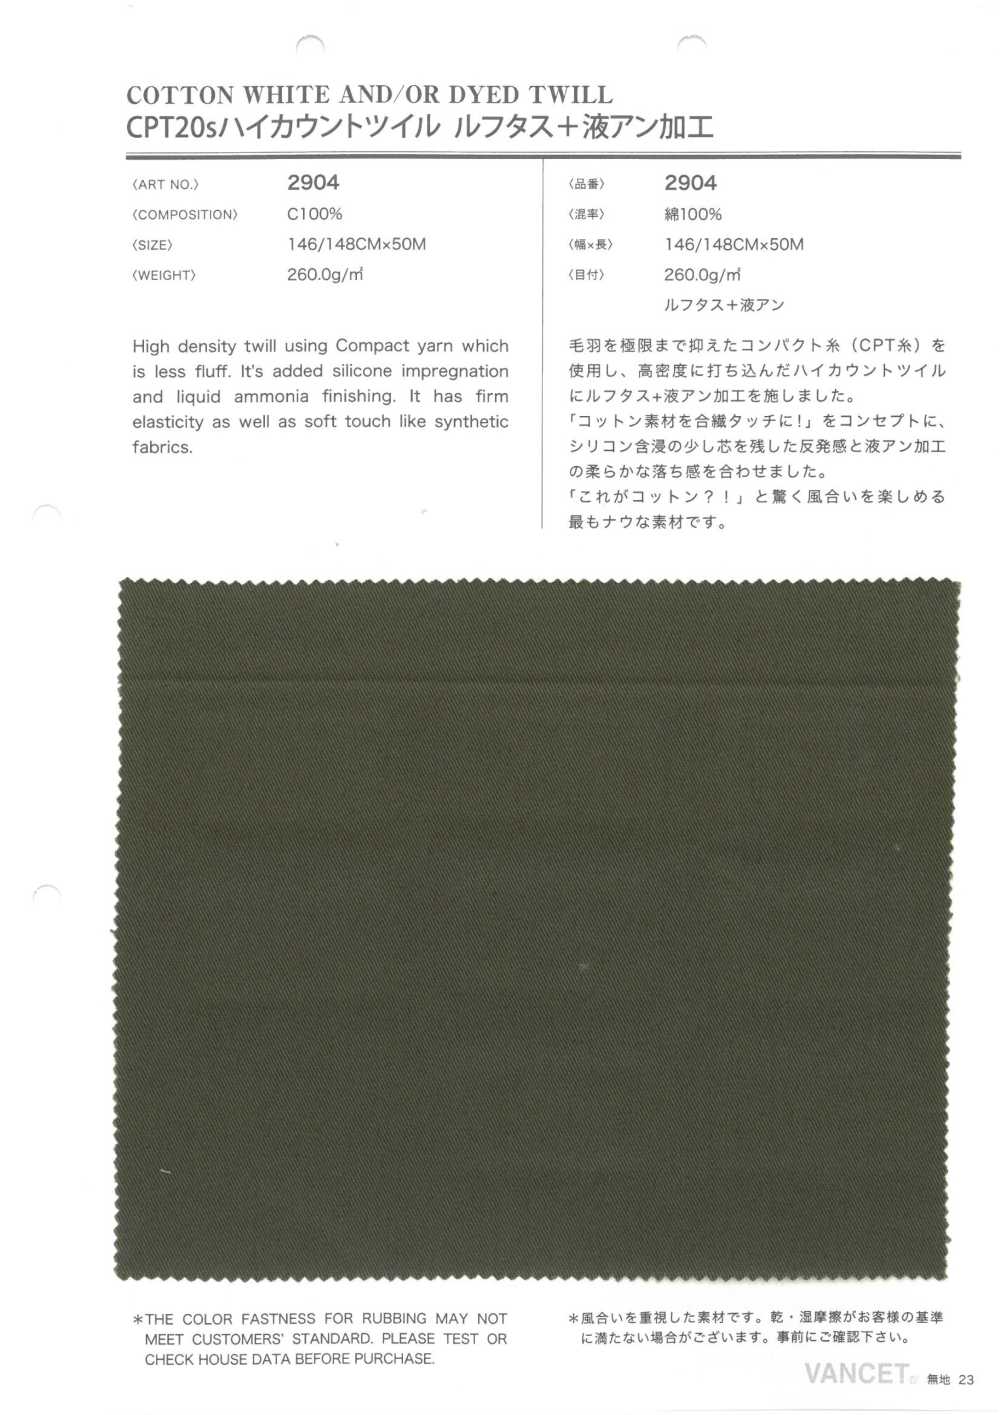 2904 CPT20 Thread High Count Twill Luftas + Liquid Ammonia Mercerization Unprocessed[Textile / Fabric] VANCET